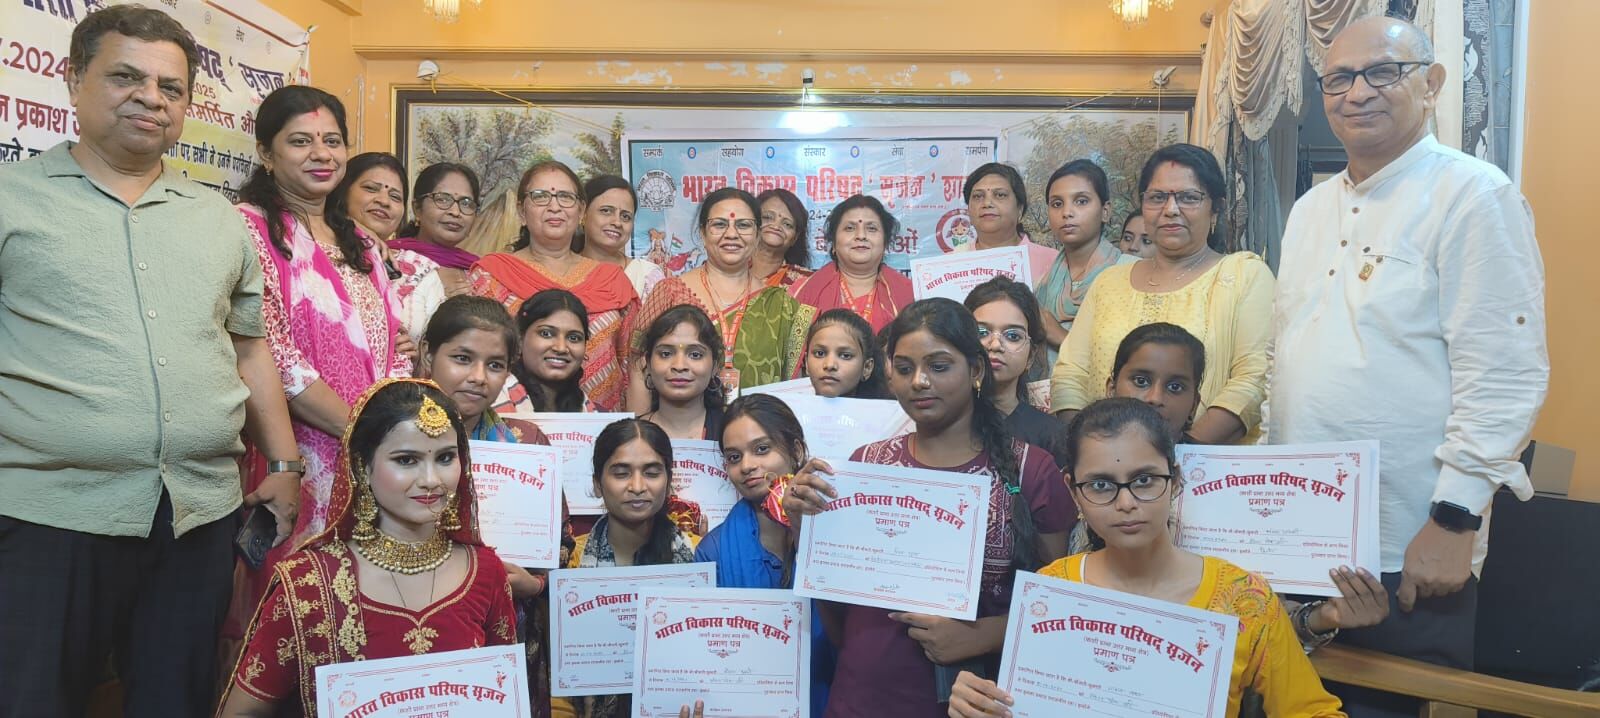 Bharat विकास परिषद सृजन शाखा के द्वितीय स्थापना दिवस पर बेटियों को किया गया सम्मानित